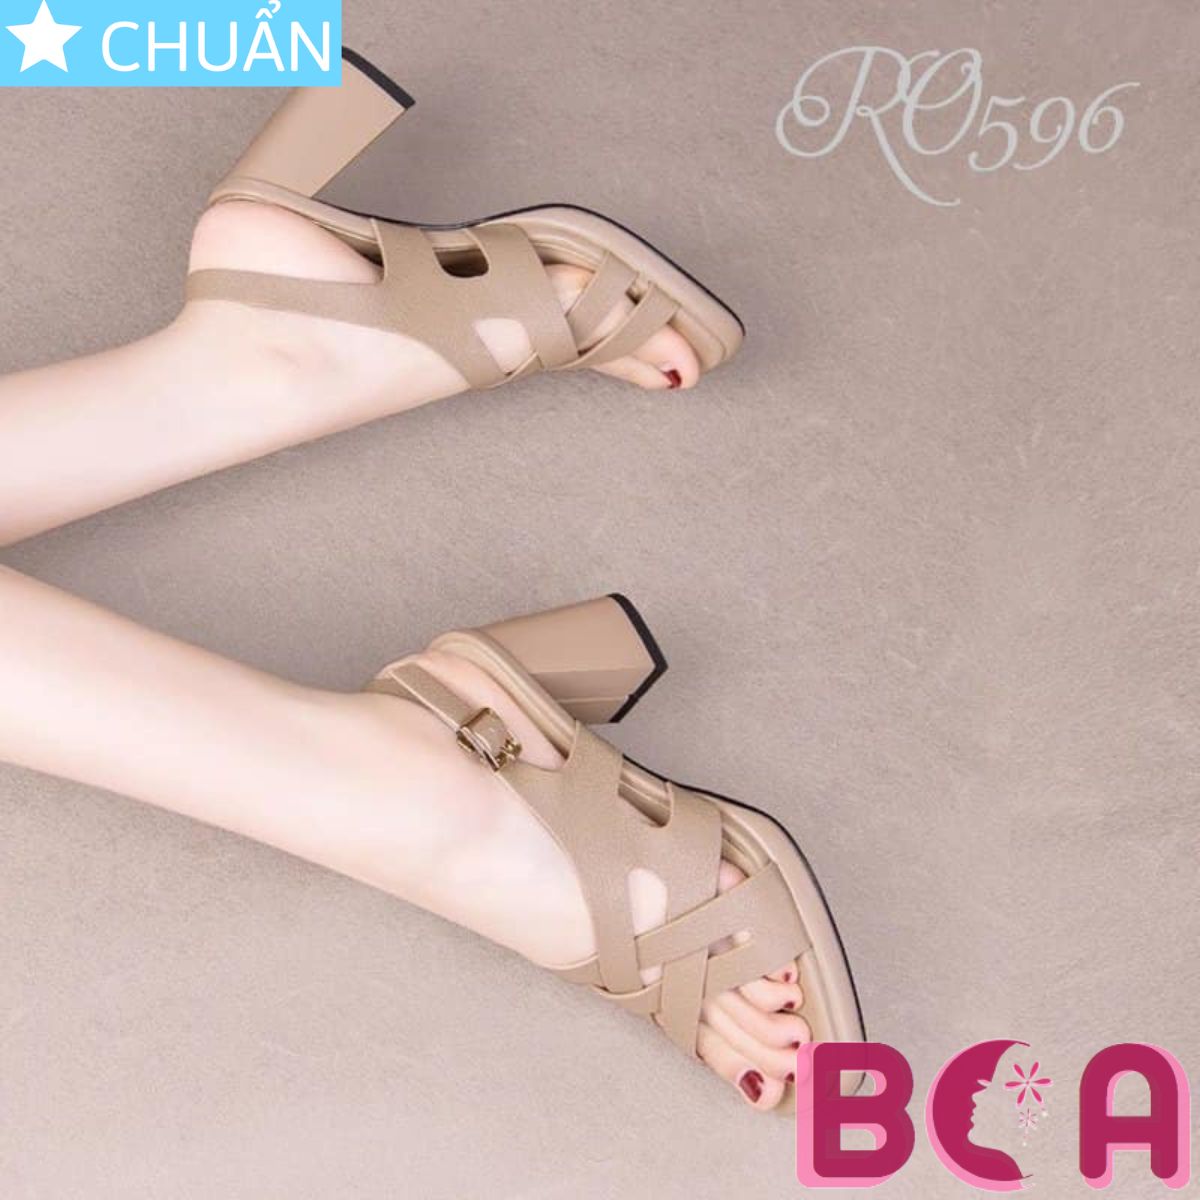 Sandal cao gót nữ màu da RO596 ROSATA tại BCASHOP kiểu dáng thời trang, mang vào tôn dáng và tôn da cực kỳ